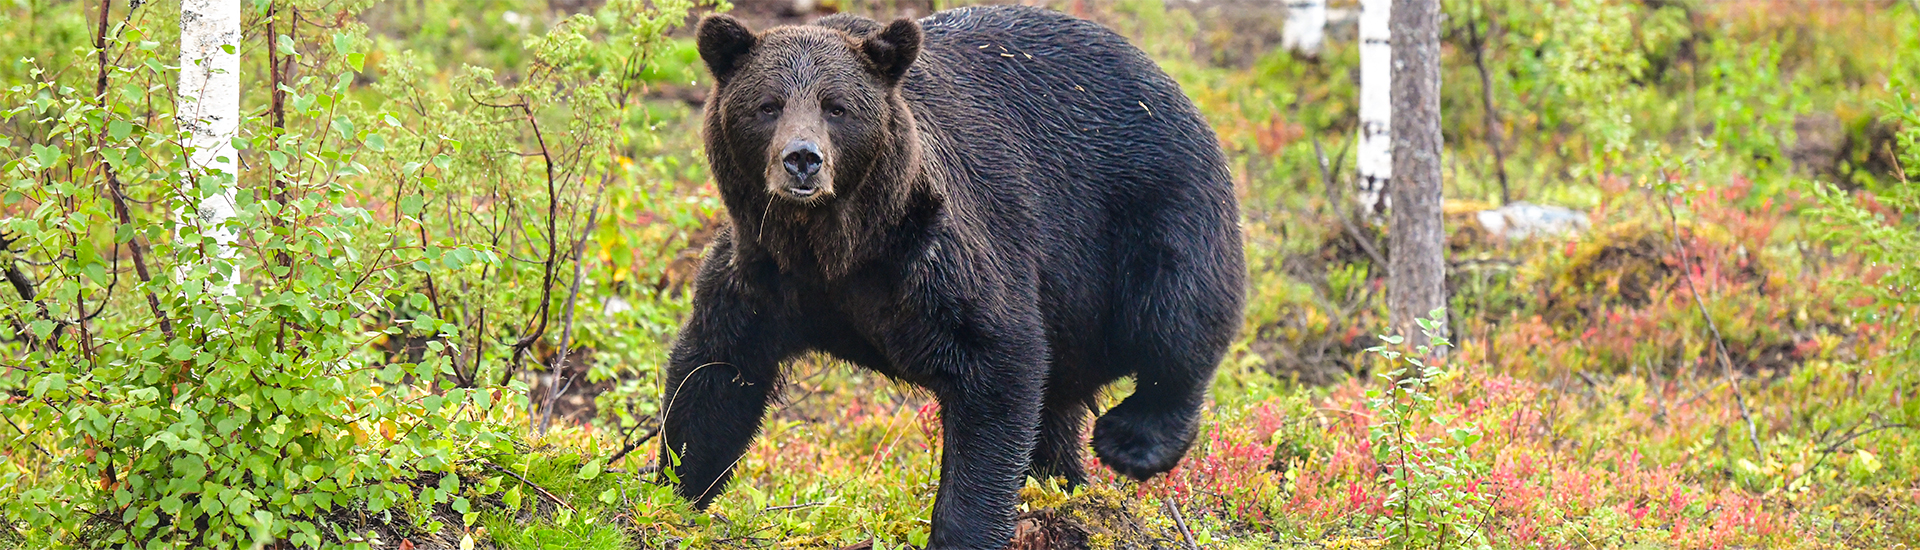 Wildlife in Finnland - mit Feelgood Reisen kannst du auch Bären beobachten! 